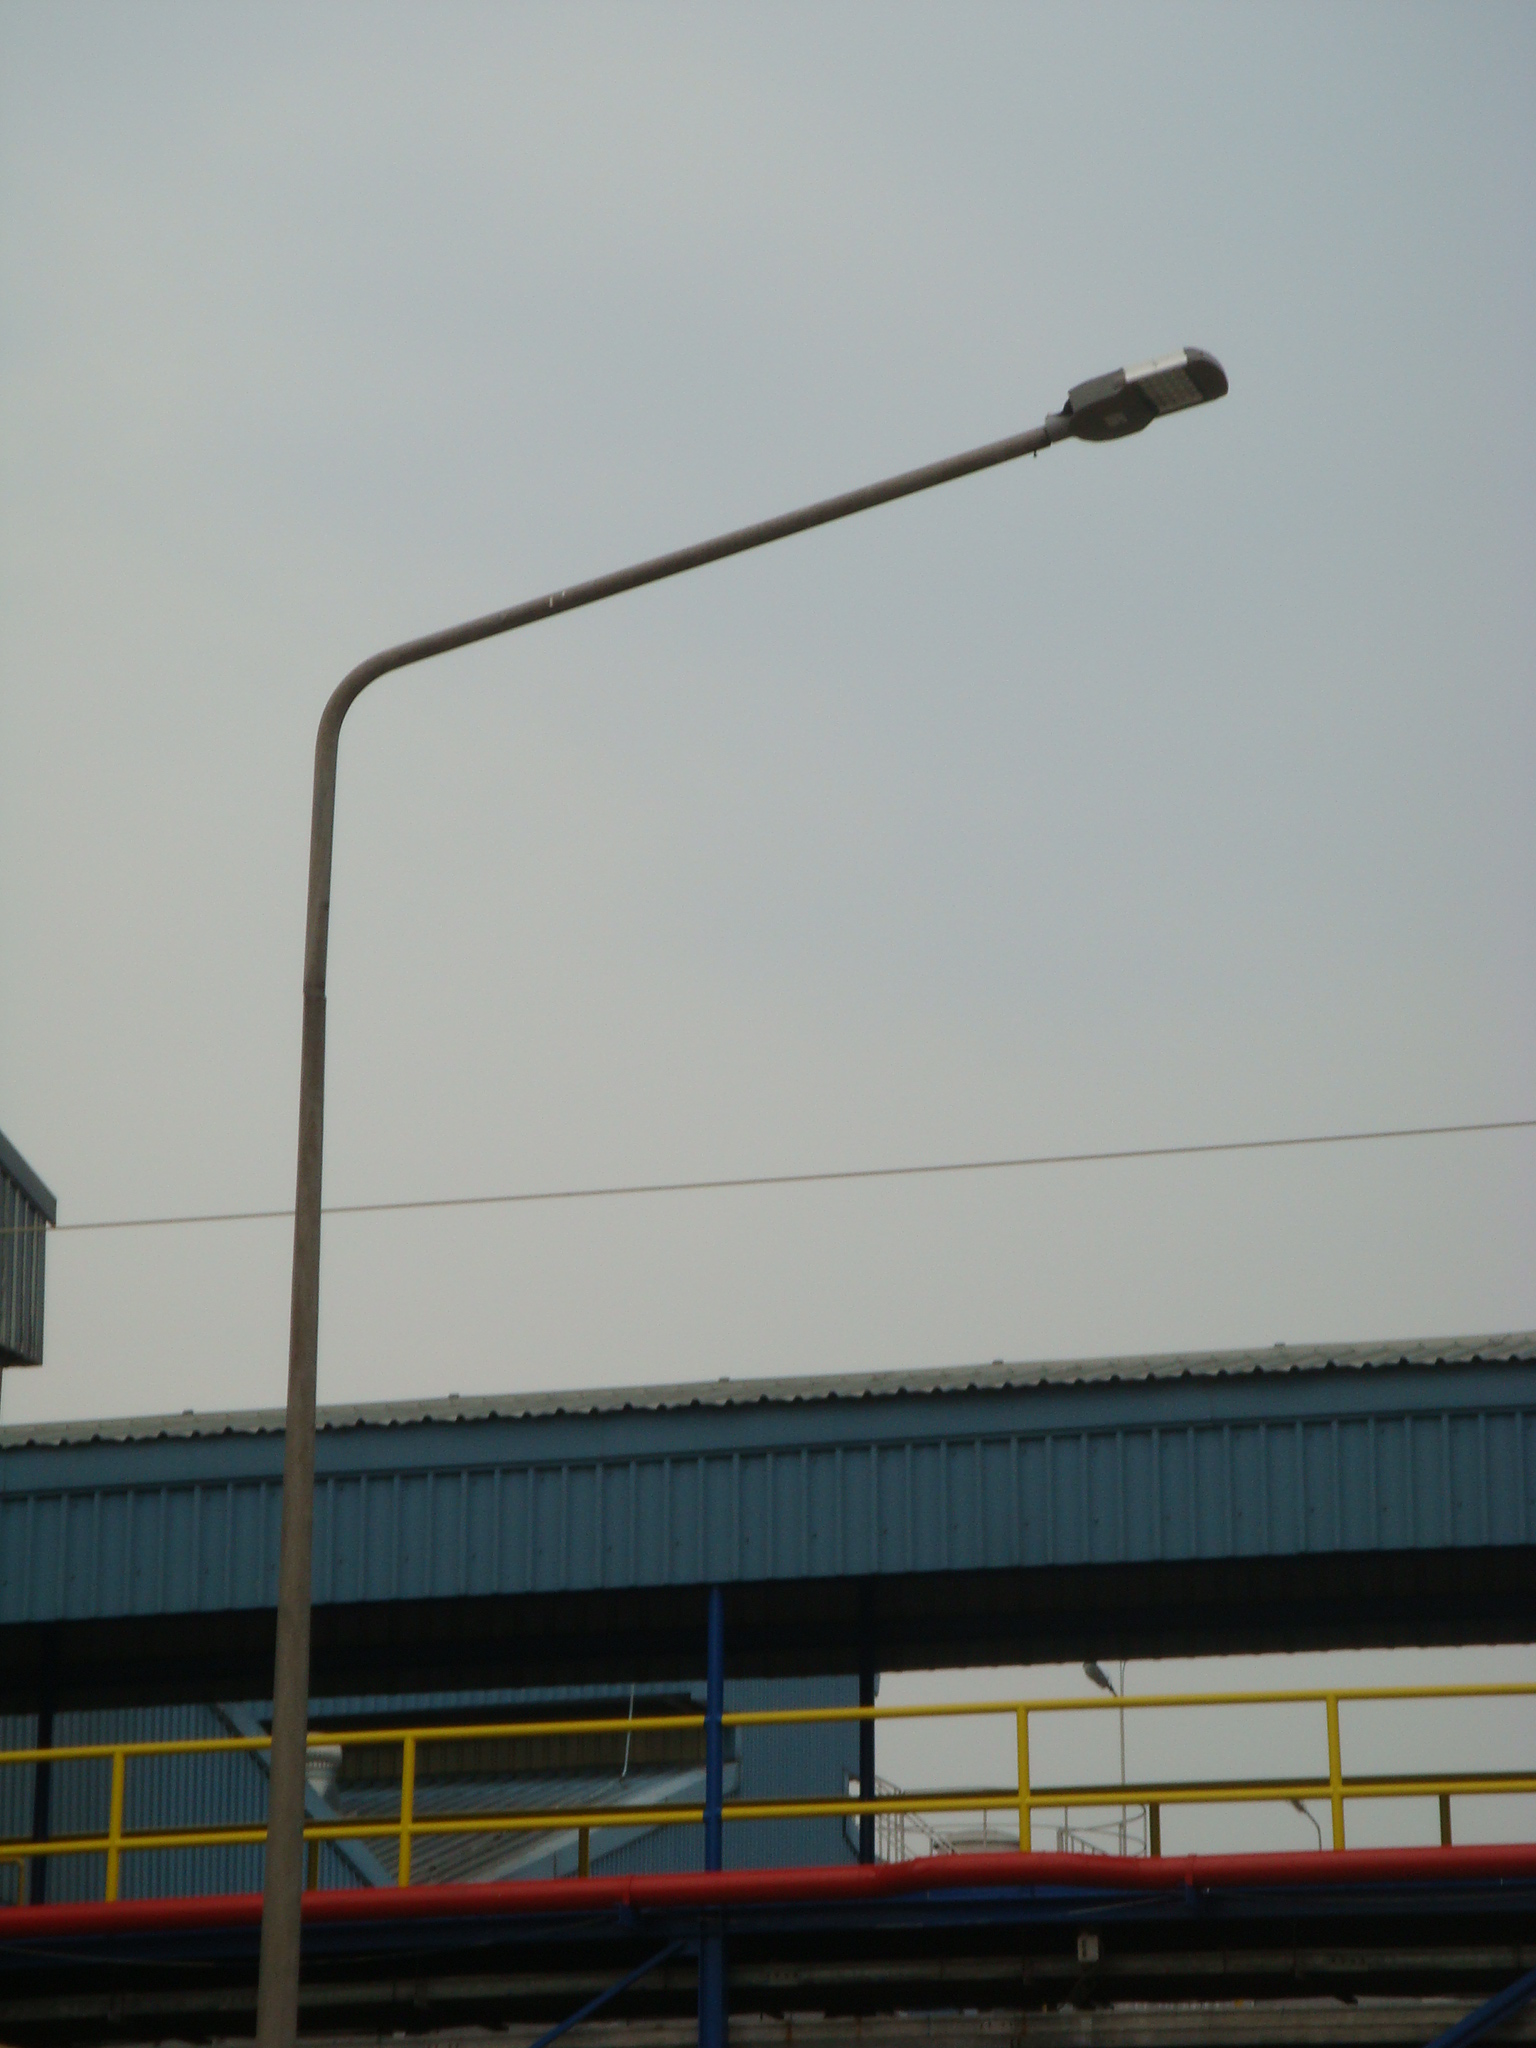 ผลงานการติดตั้งโคมไฟถนน LED (LED STREET LIGHT) @โรงงานผลิตเบียร์